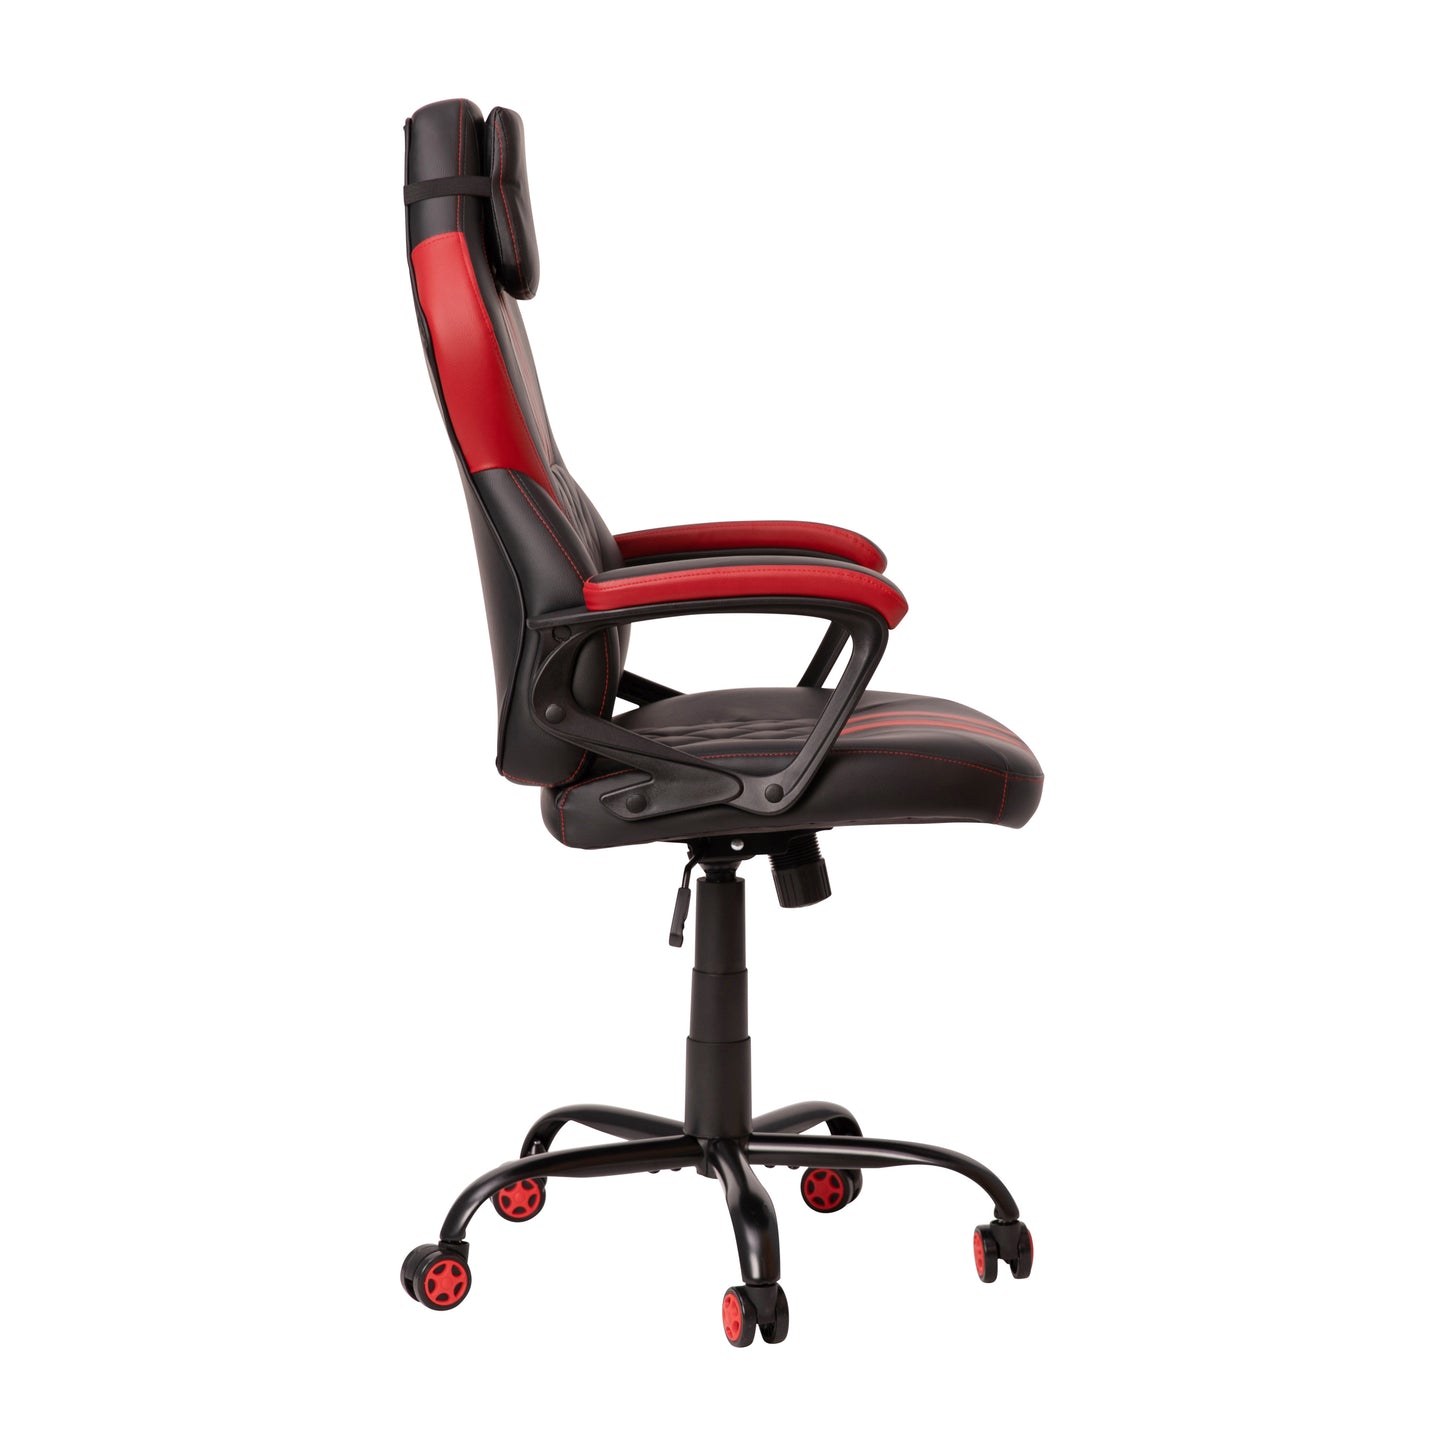 Designer Gaming Chair